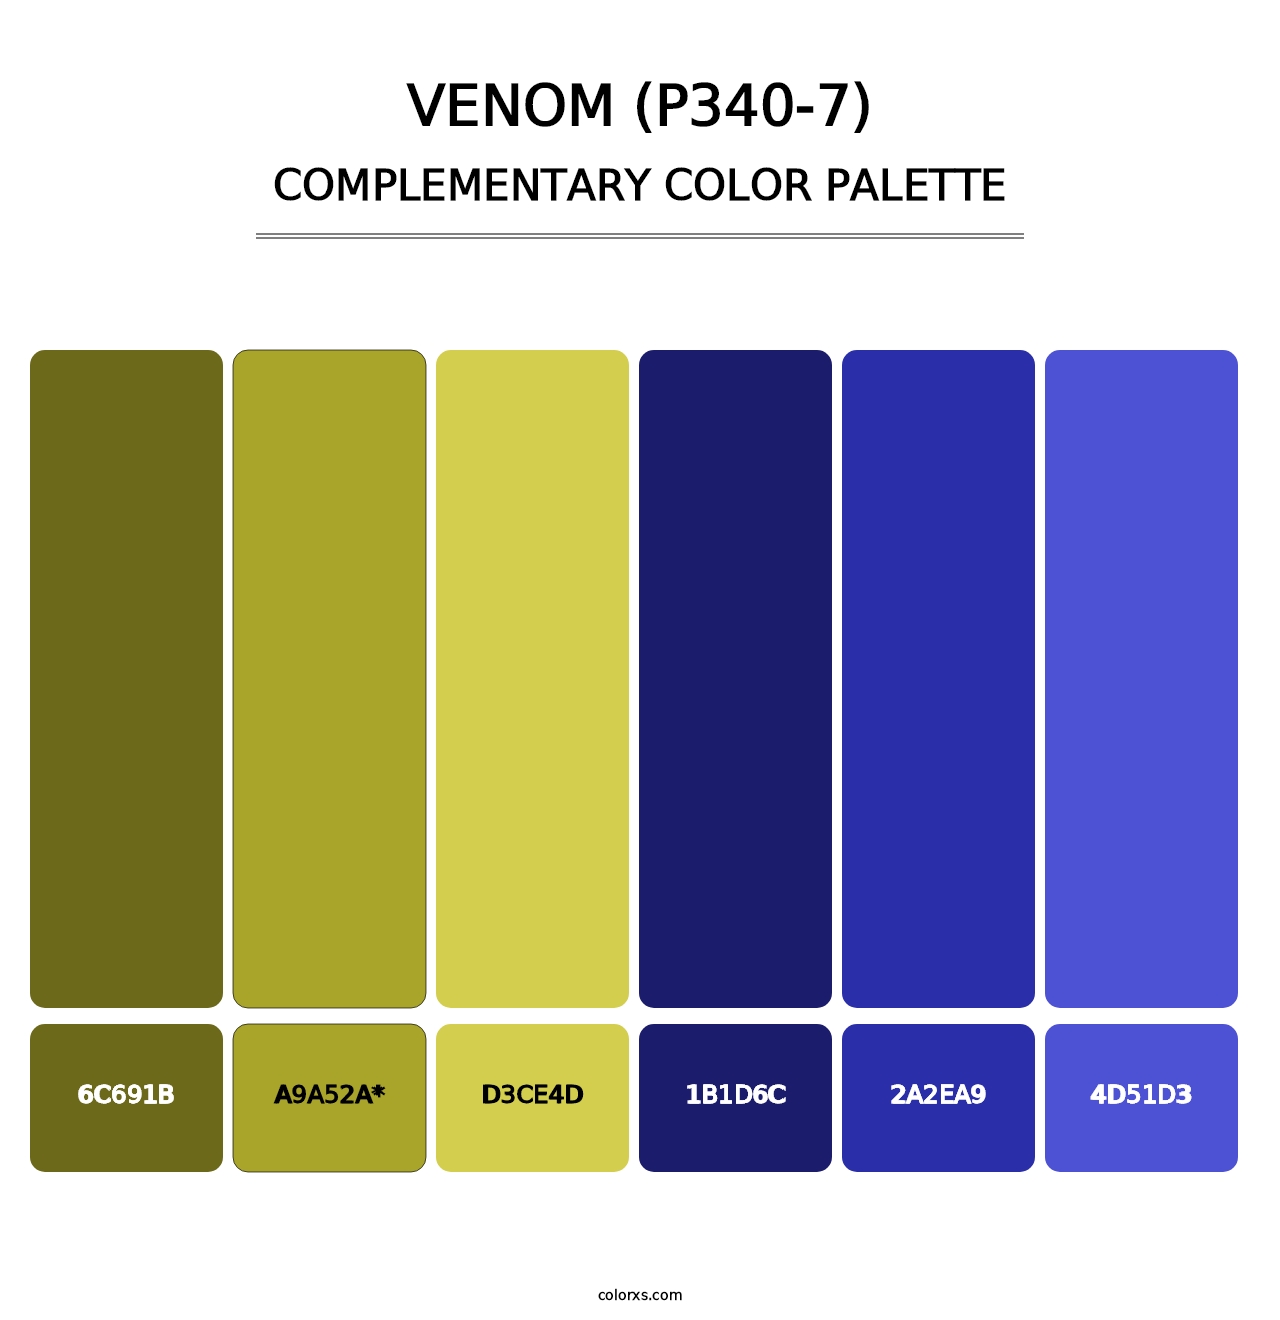 Venom (P340-7) - Complementary Color Palette